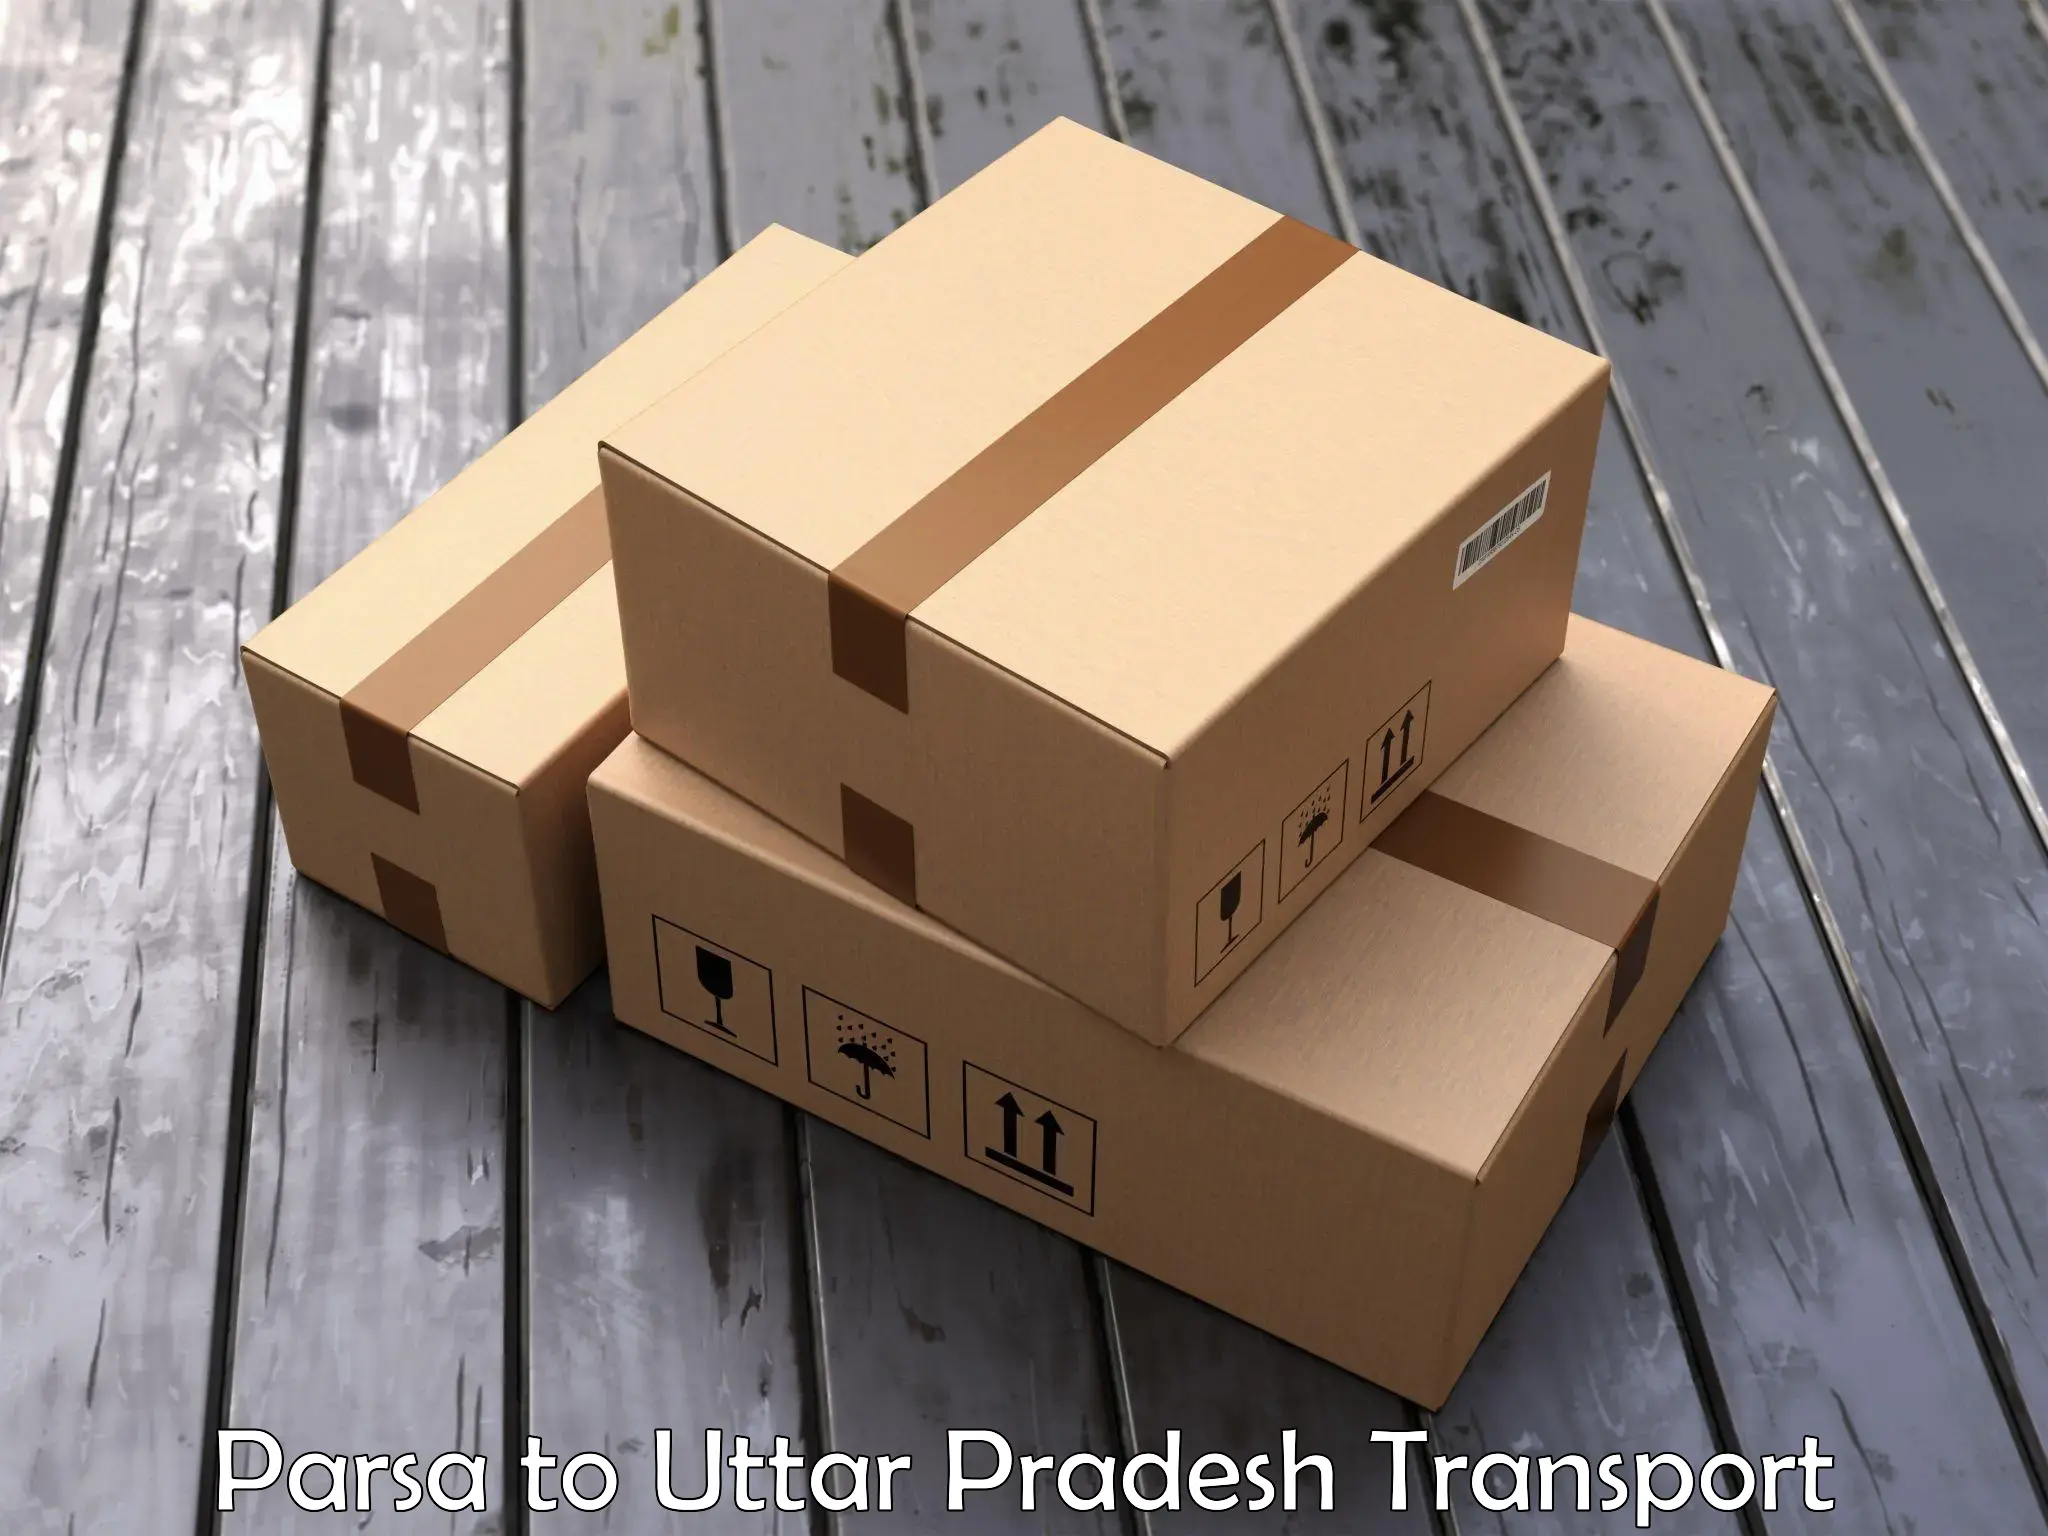 Two wheeler parcel service Parsa to Chakia Chandauli